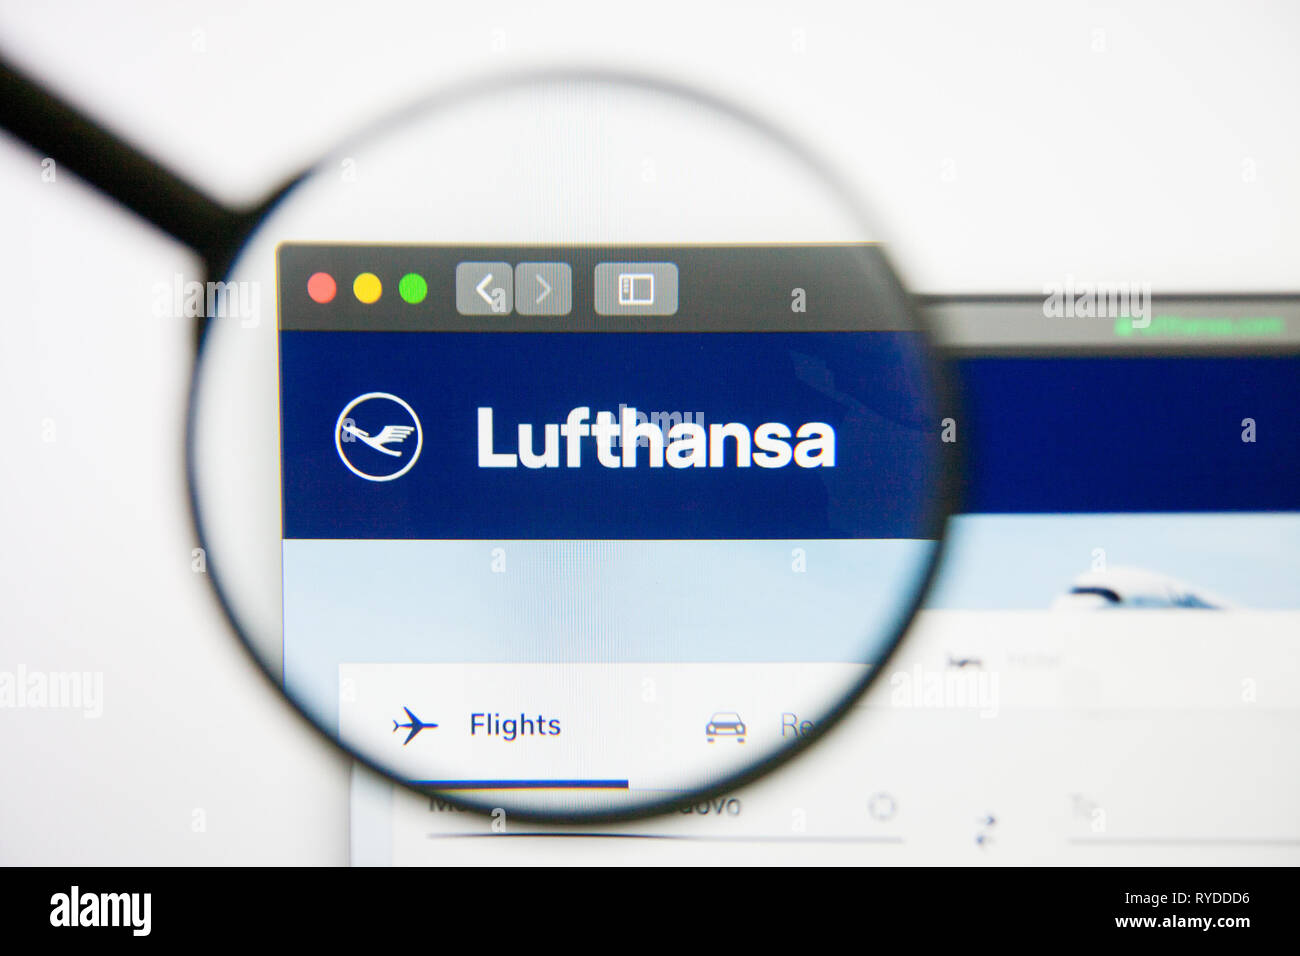 Los Angeles, California, USA - 14 February 2019: Deutsche Lufthansa airline website homepage. Deutsche Lufthansa logo visible on screen. Stock Photo